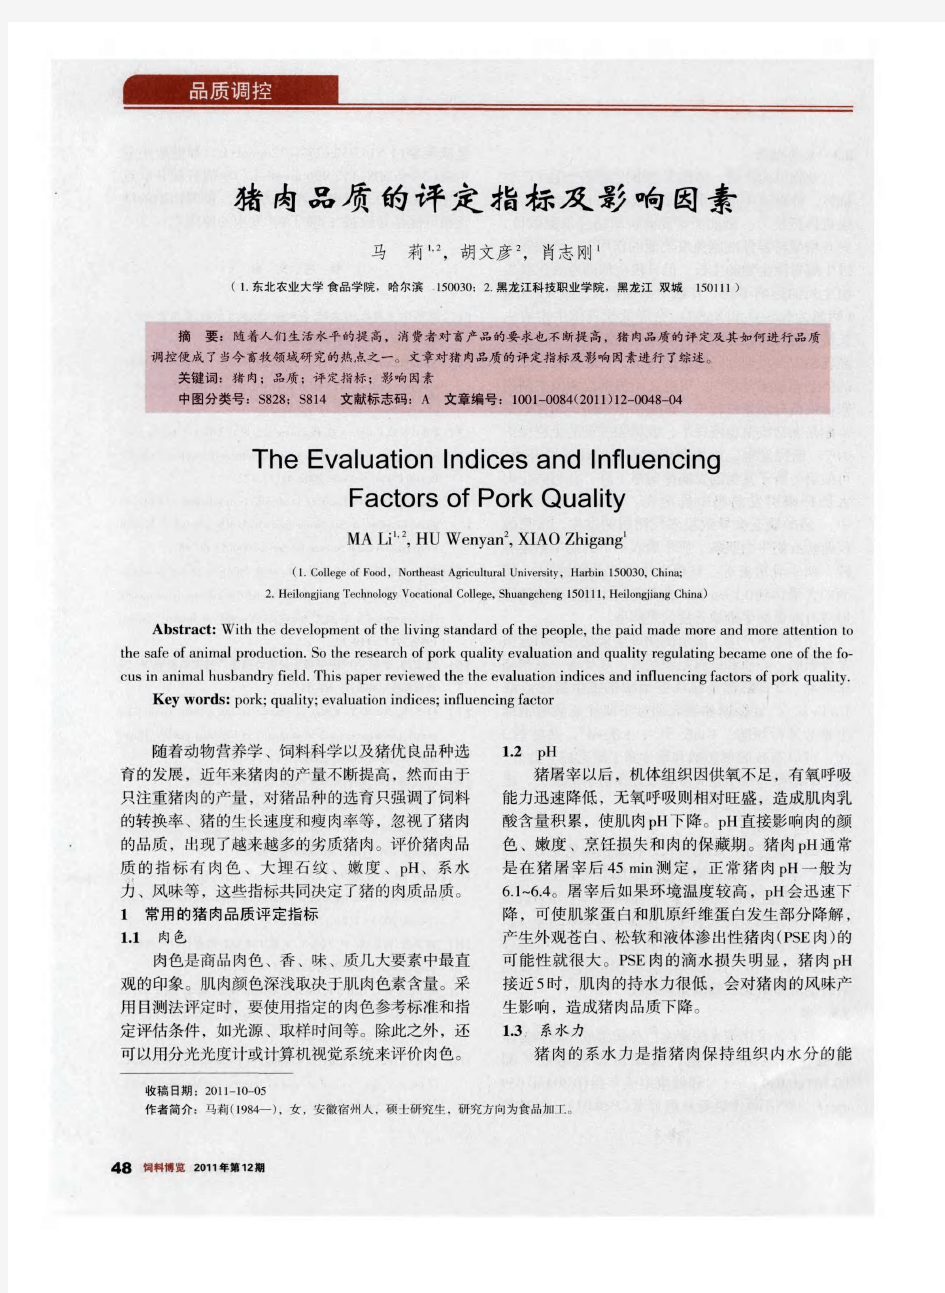 猪肉品质的评定指标及影响因素